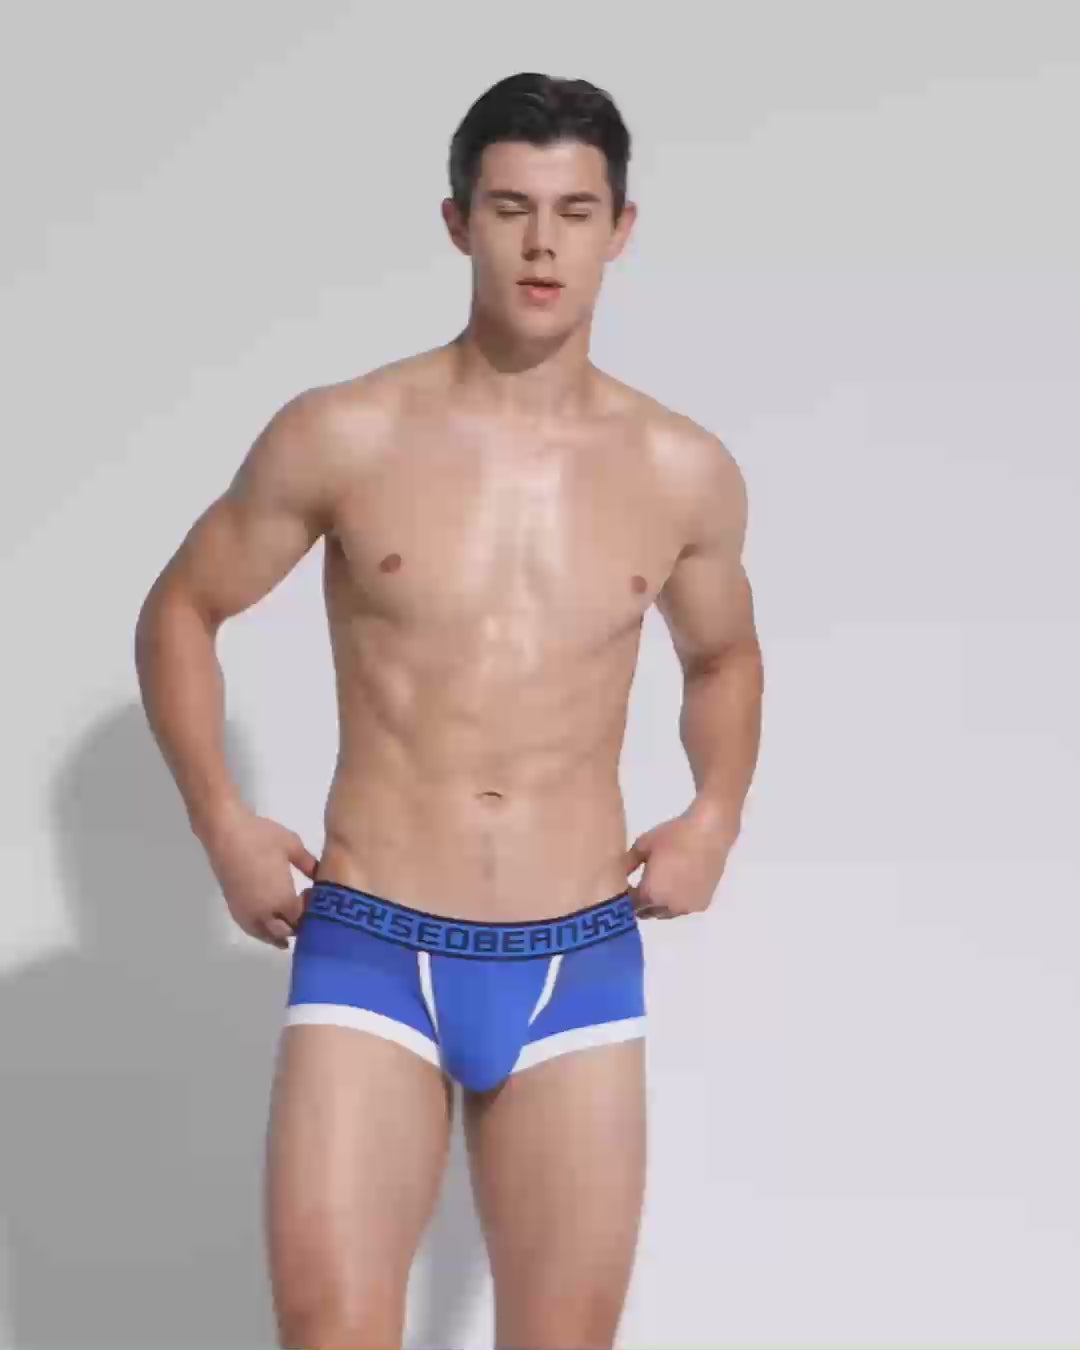 SEOBEAN Mens Sexy Low Rise Mesh Boxer Nano Brief Underwear 00212 – SEOBEAN®